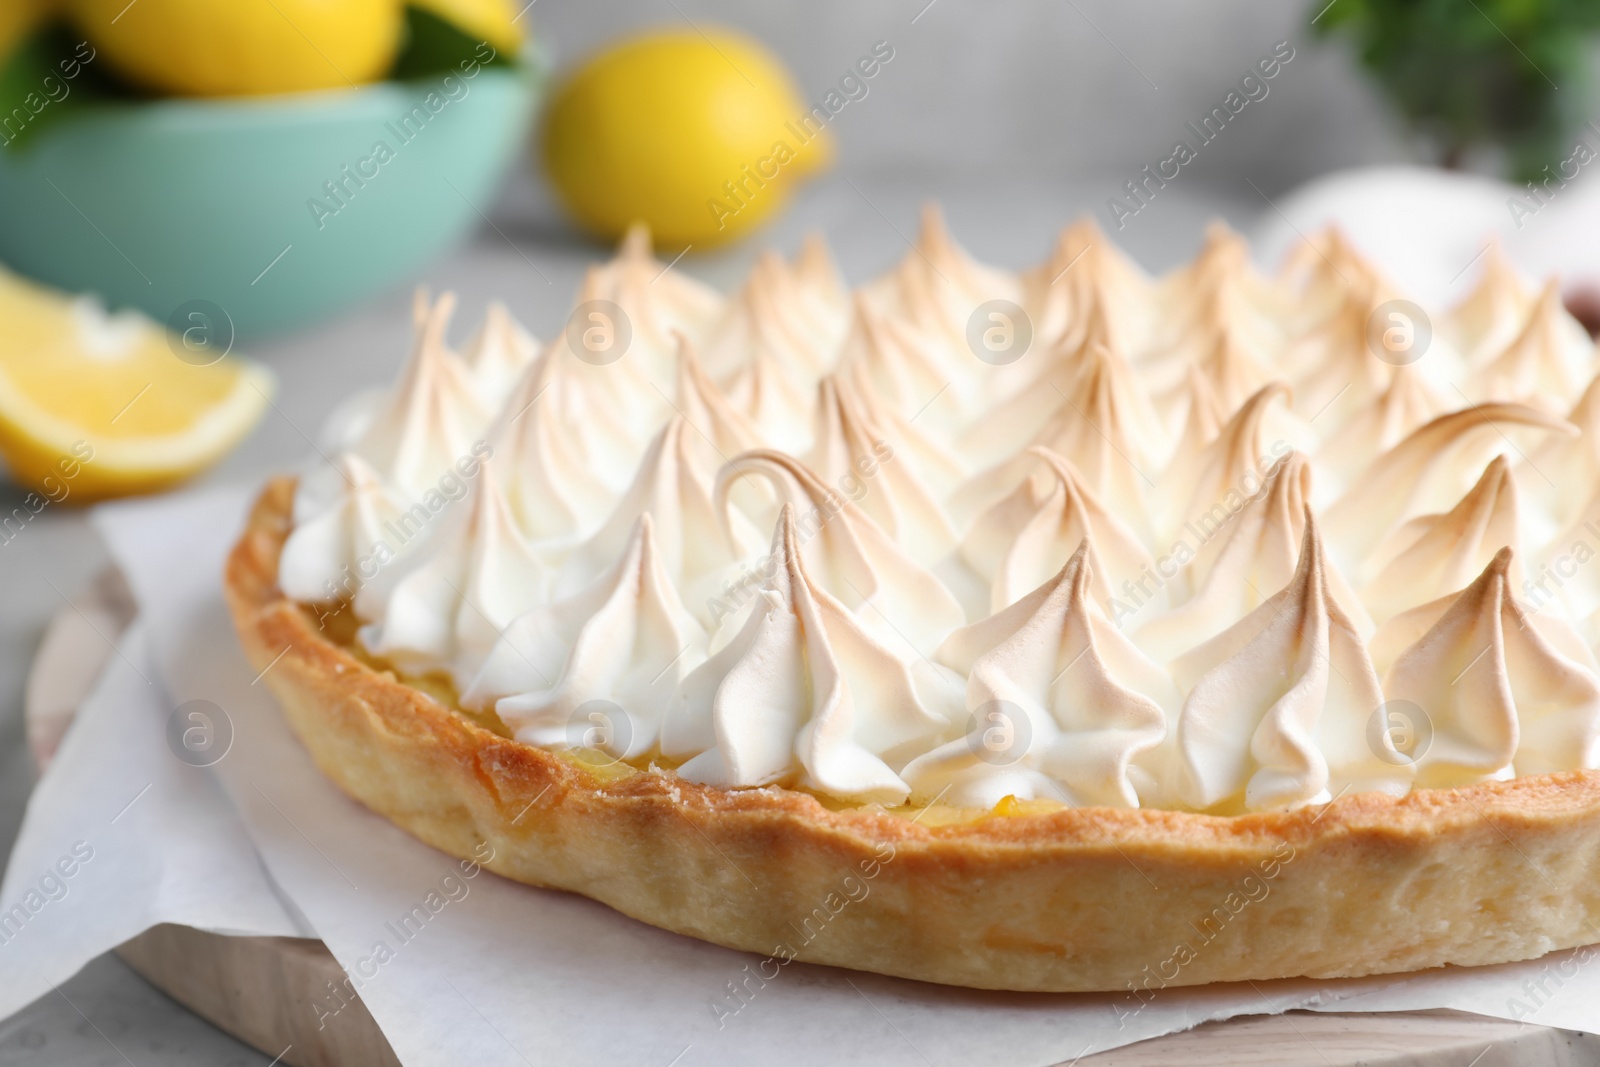 Photo of Delicious lemon meringue pie on board, closeup